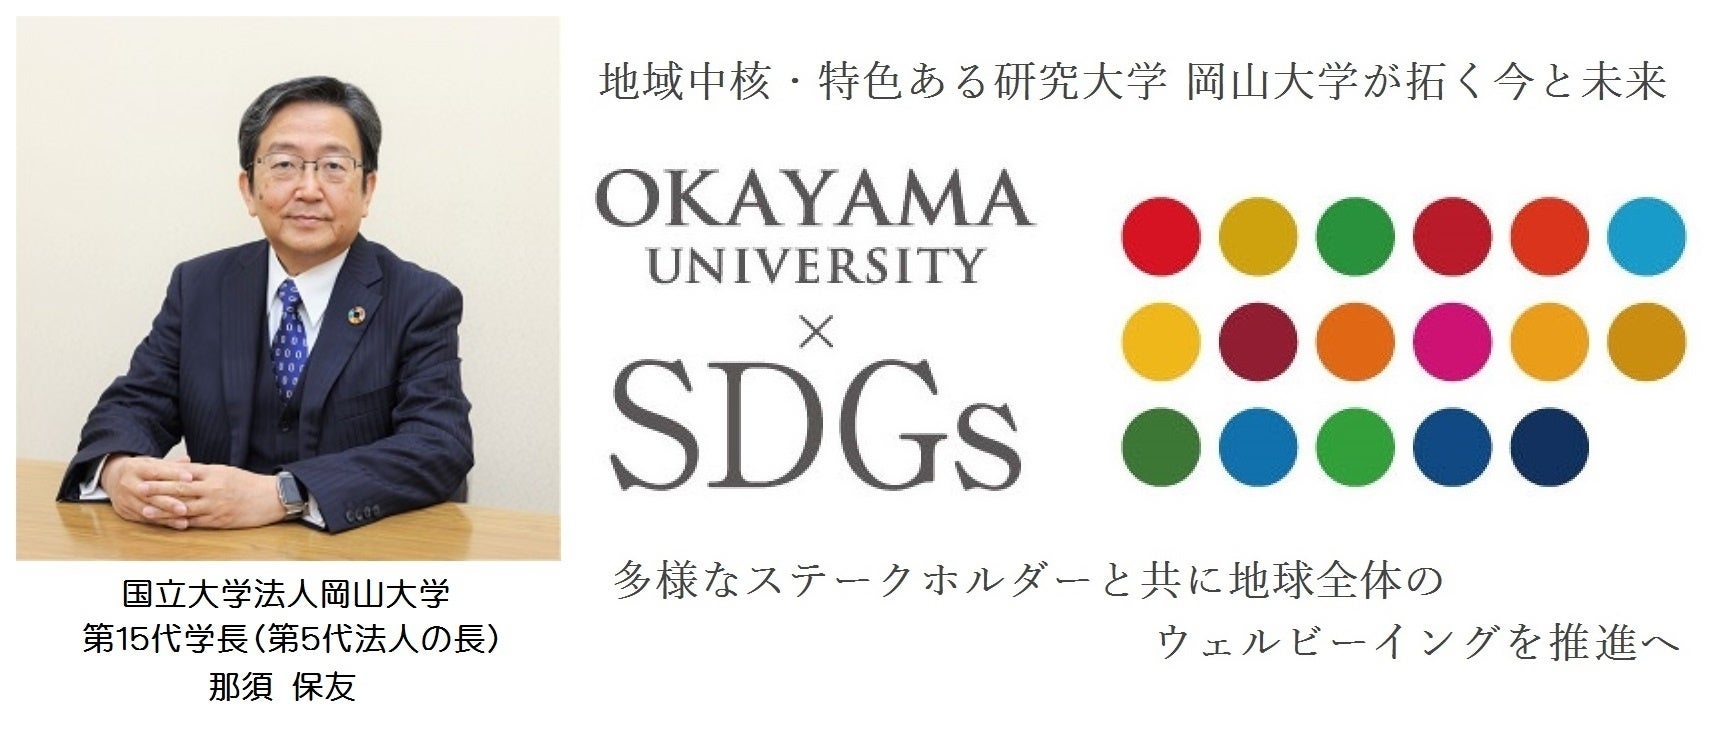 【岡山大学】岡山大学ユネスコチェア特別講座「第3回おかやま夢育イニシアチブ～岡山県産SDGsを発掘せよ！～」を開催しました